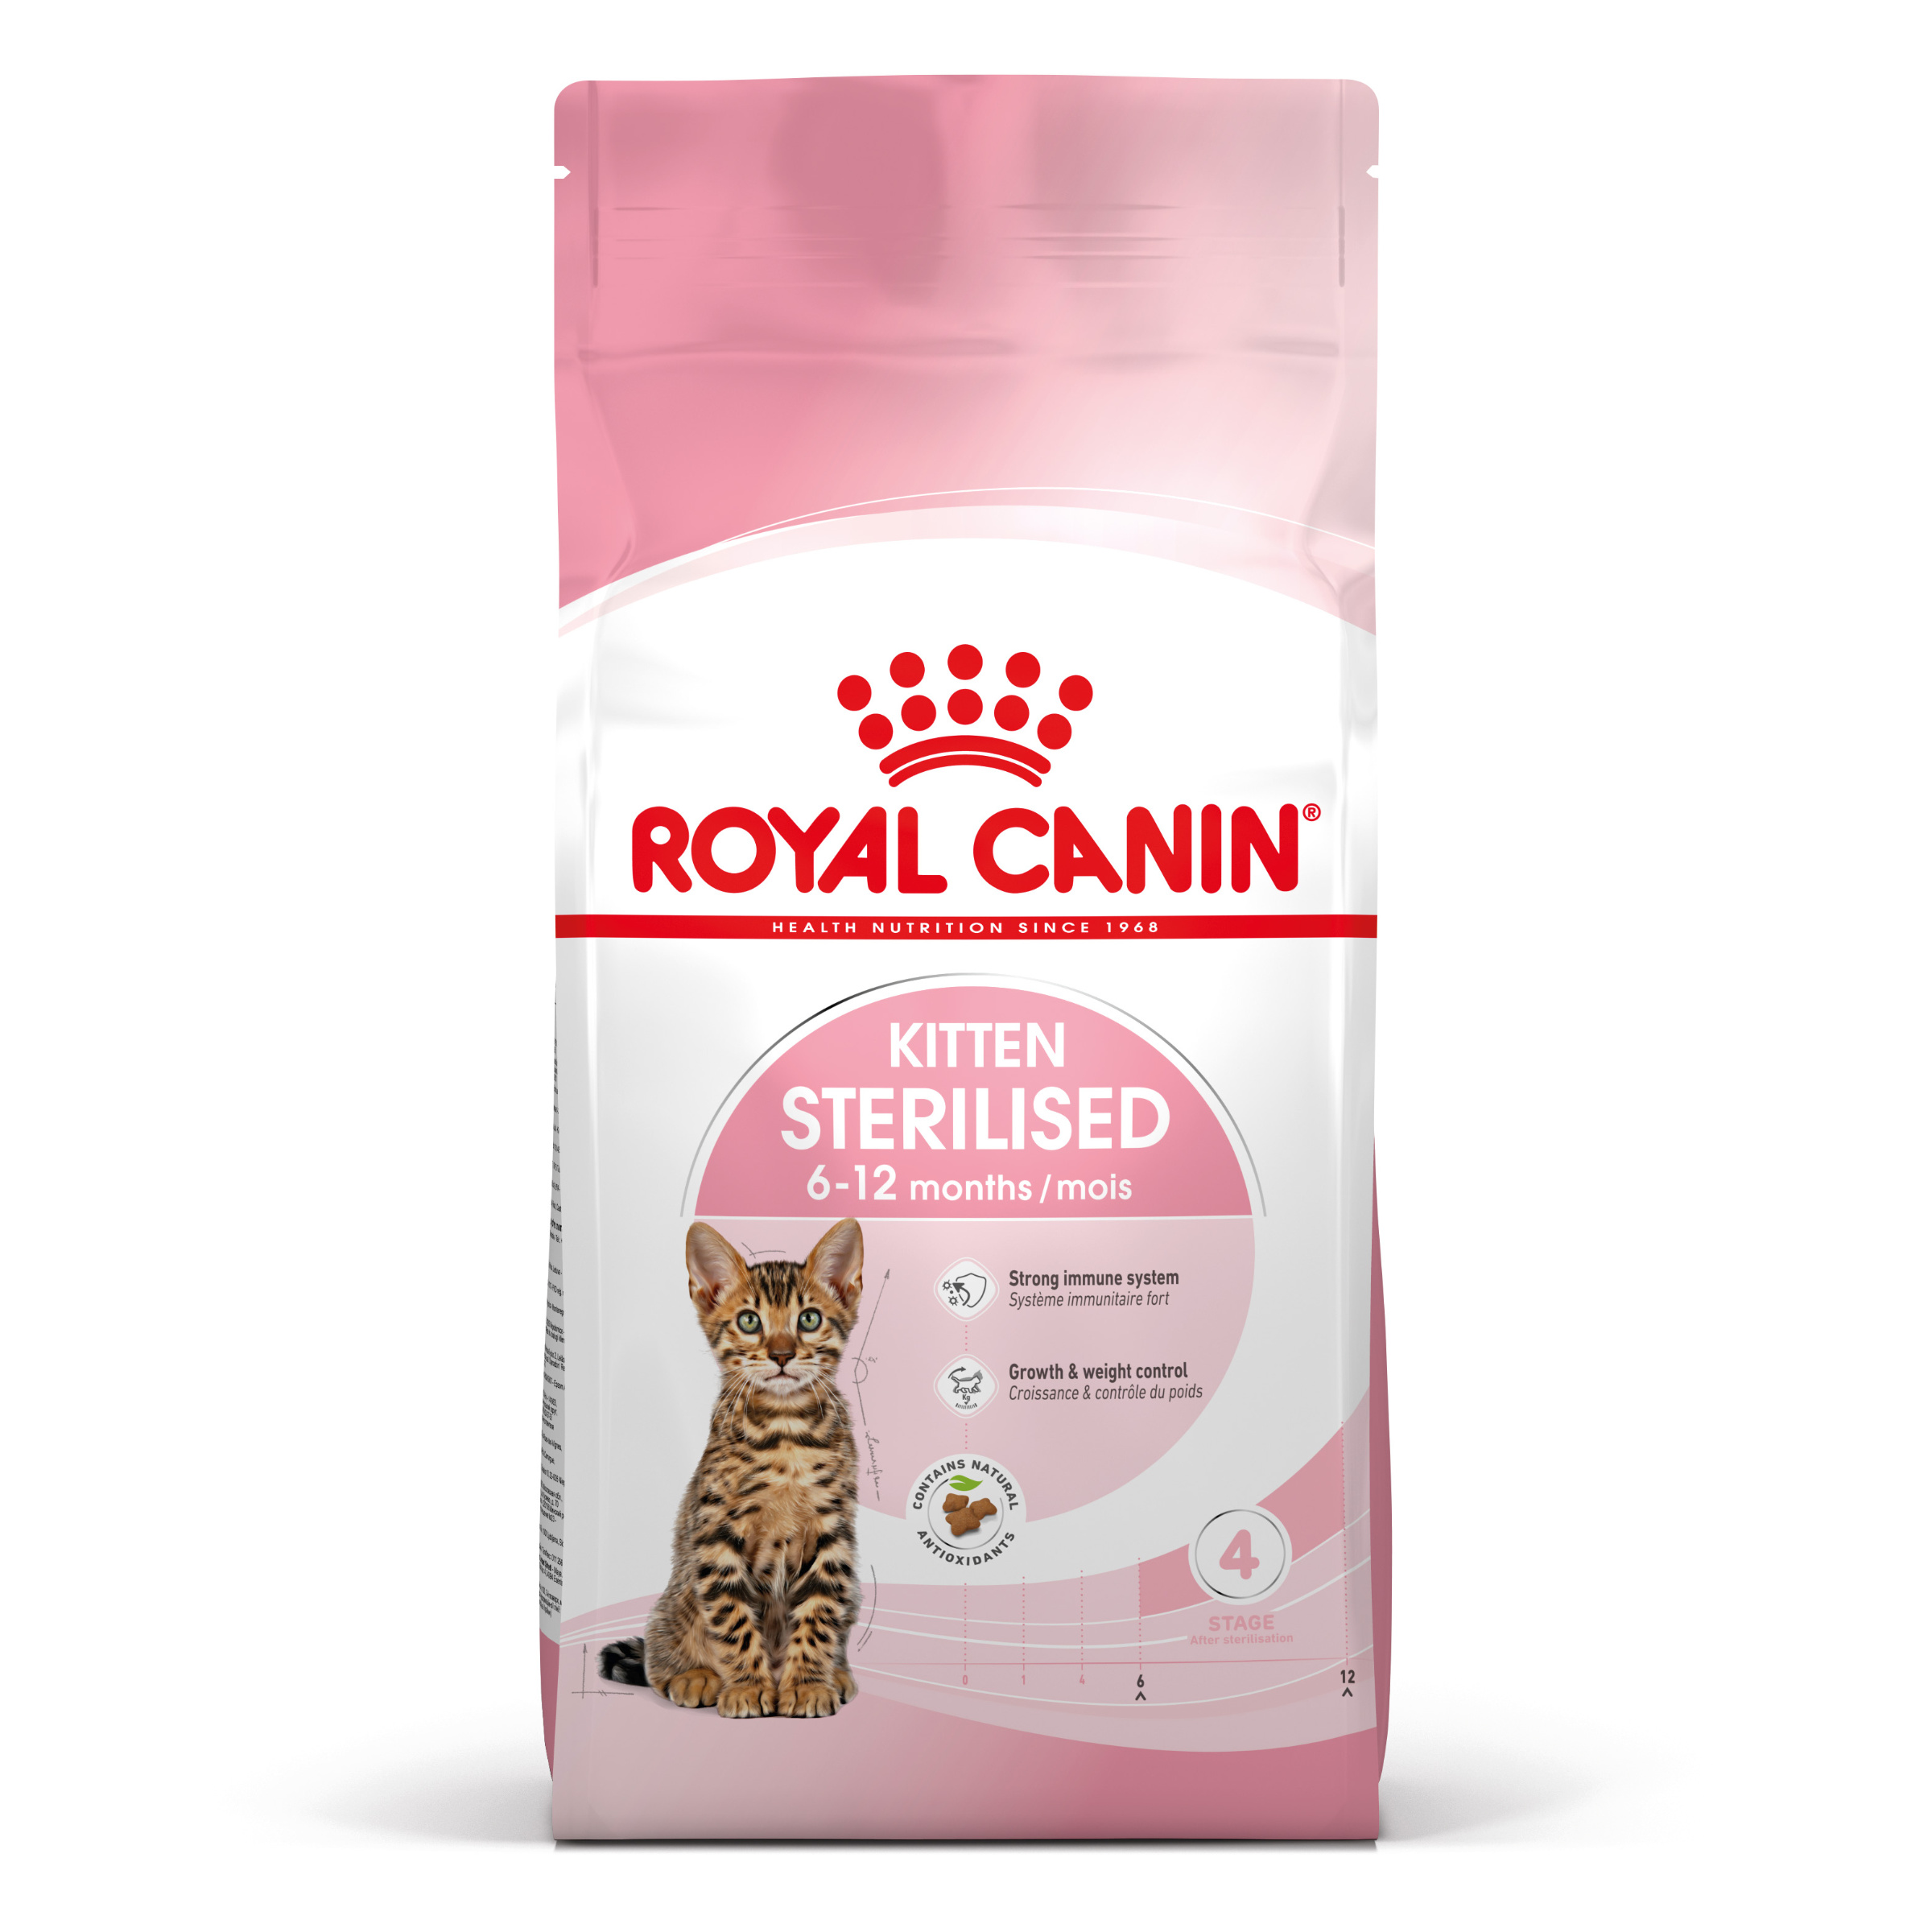 Royal Canin Kitten Sterilised - Aliment pour chats - Spécial chatons. stérilisés (de 6 à 12 mois) - 3,5kg